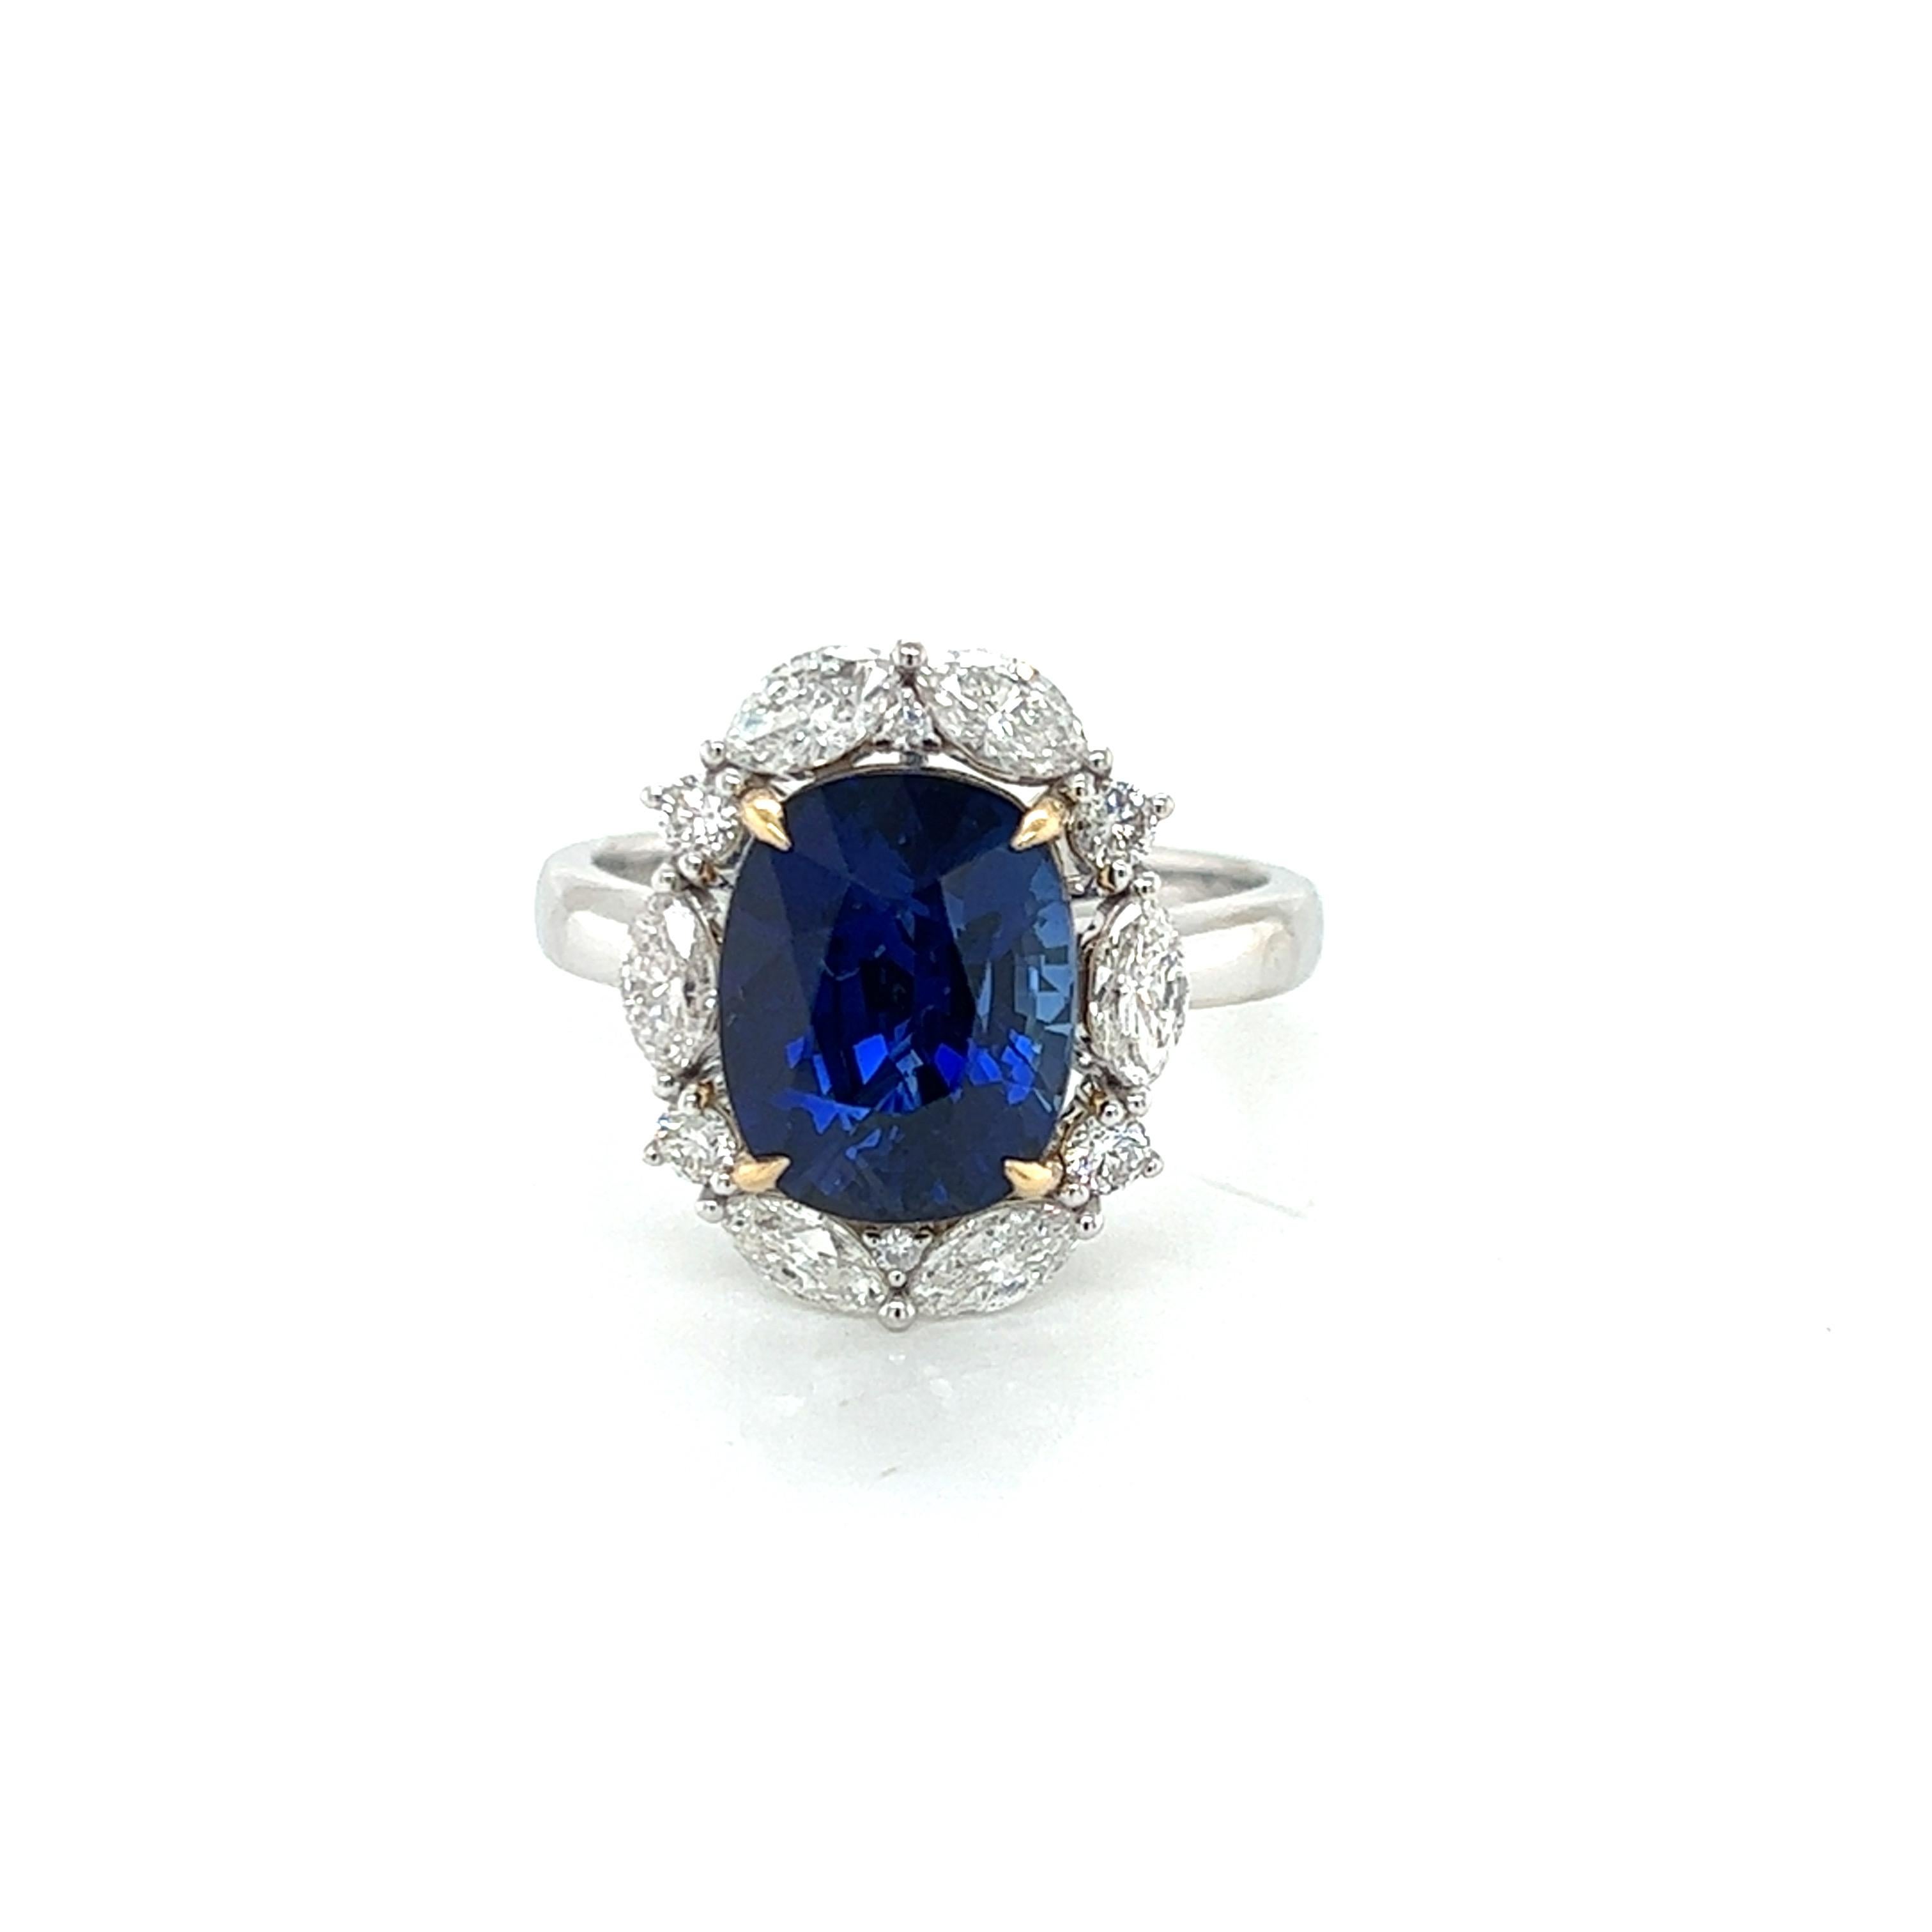 Voici l'époustouflante bague marquise en saphir bleu et diamant de 6 carats, une pièce de joaillerie vraiment exquise qui incarne le luxe et la sophistication. Cette bague est ornée d'un saphir bleu allongé et taillé en coussin, d'un poids